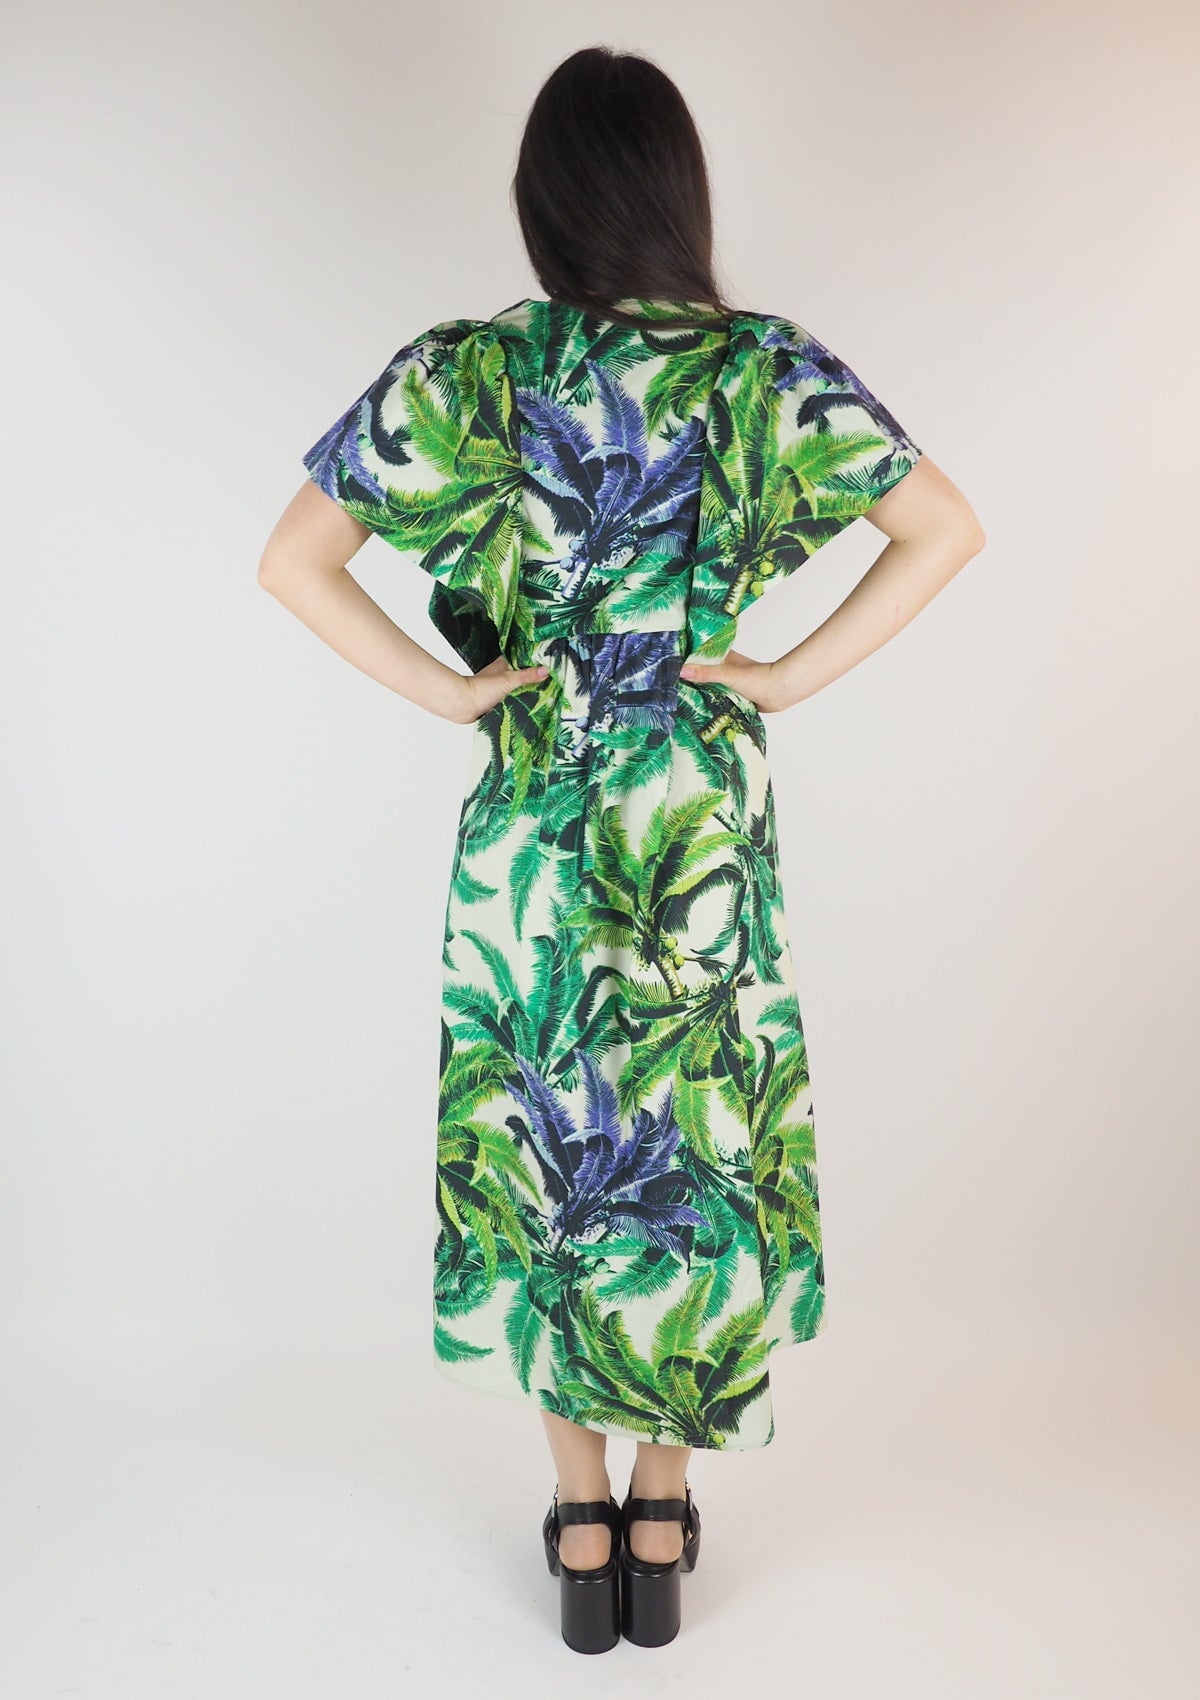 Damen Sommerkleid aus Baumwolle mit Print in Creme & Grün & Lila Damen Kleid Psophia 